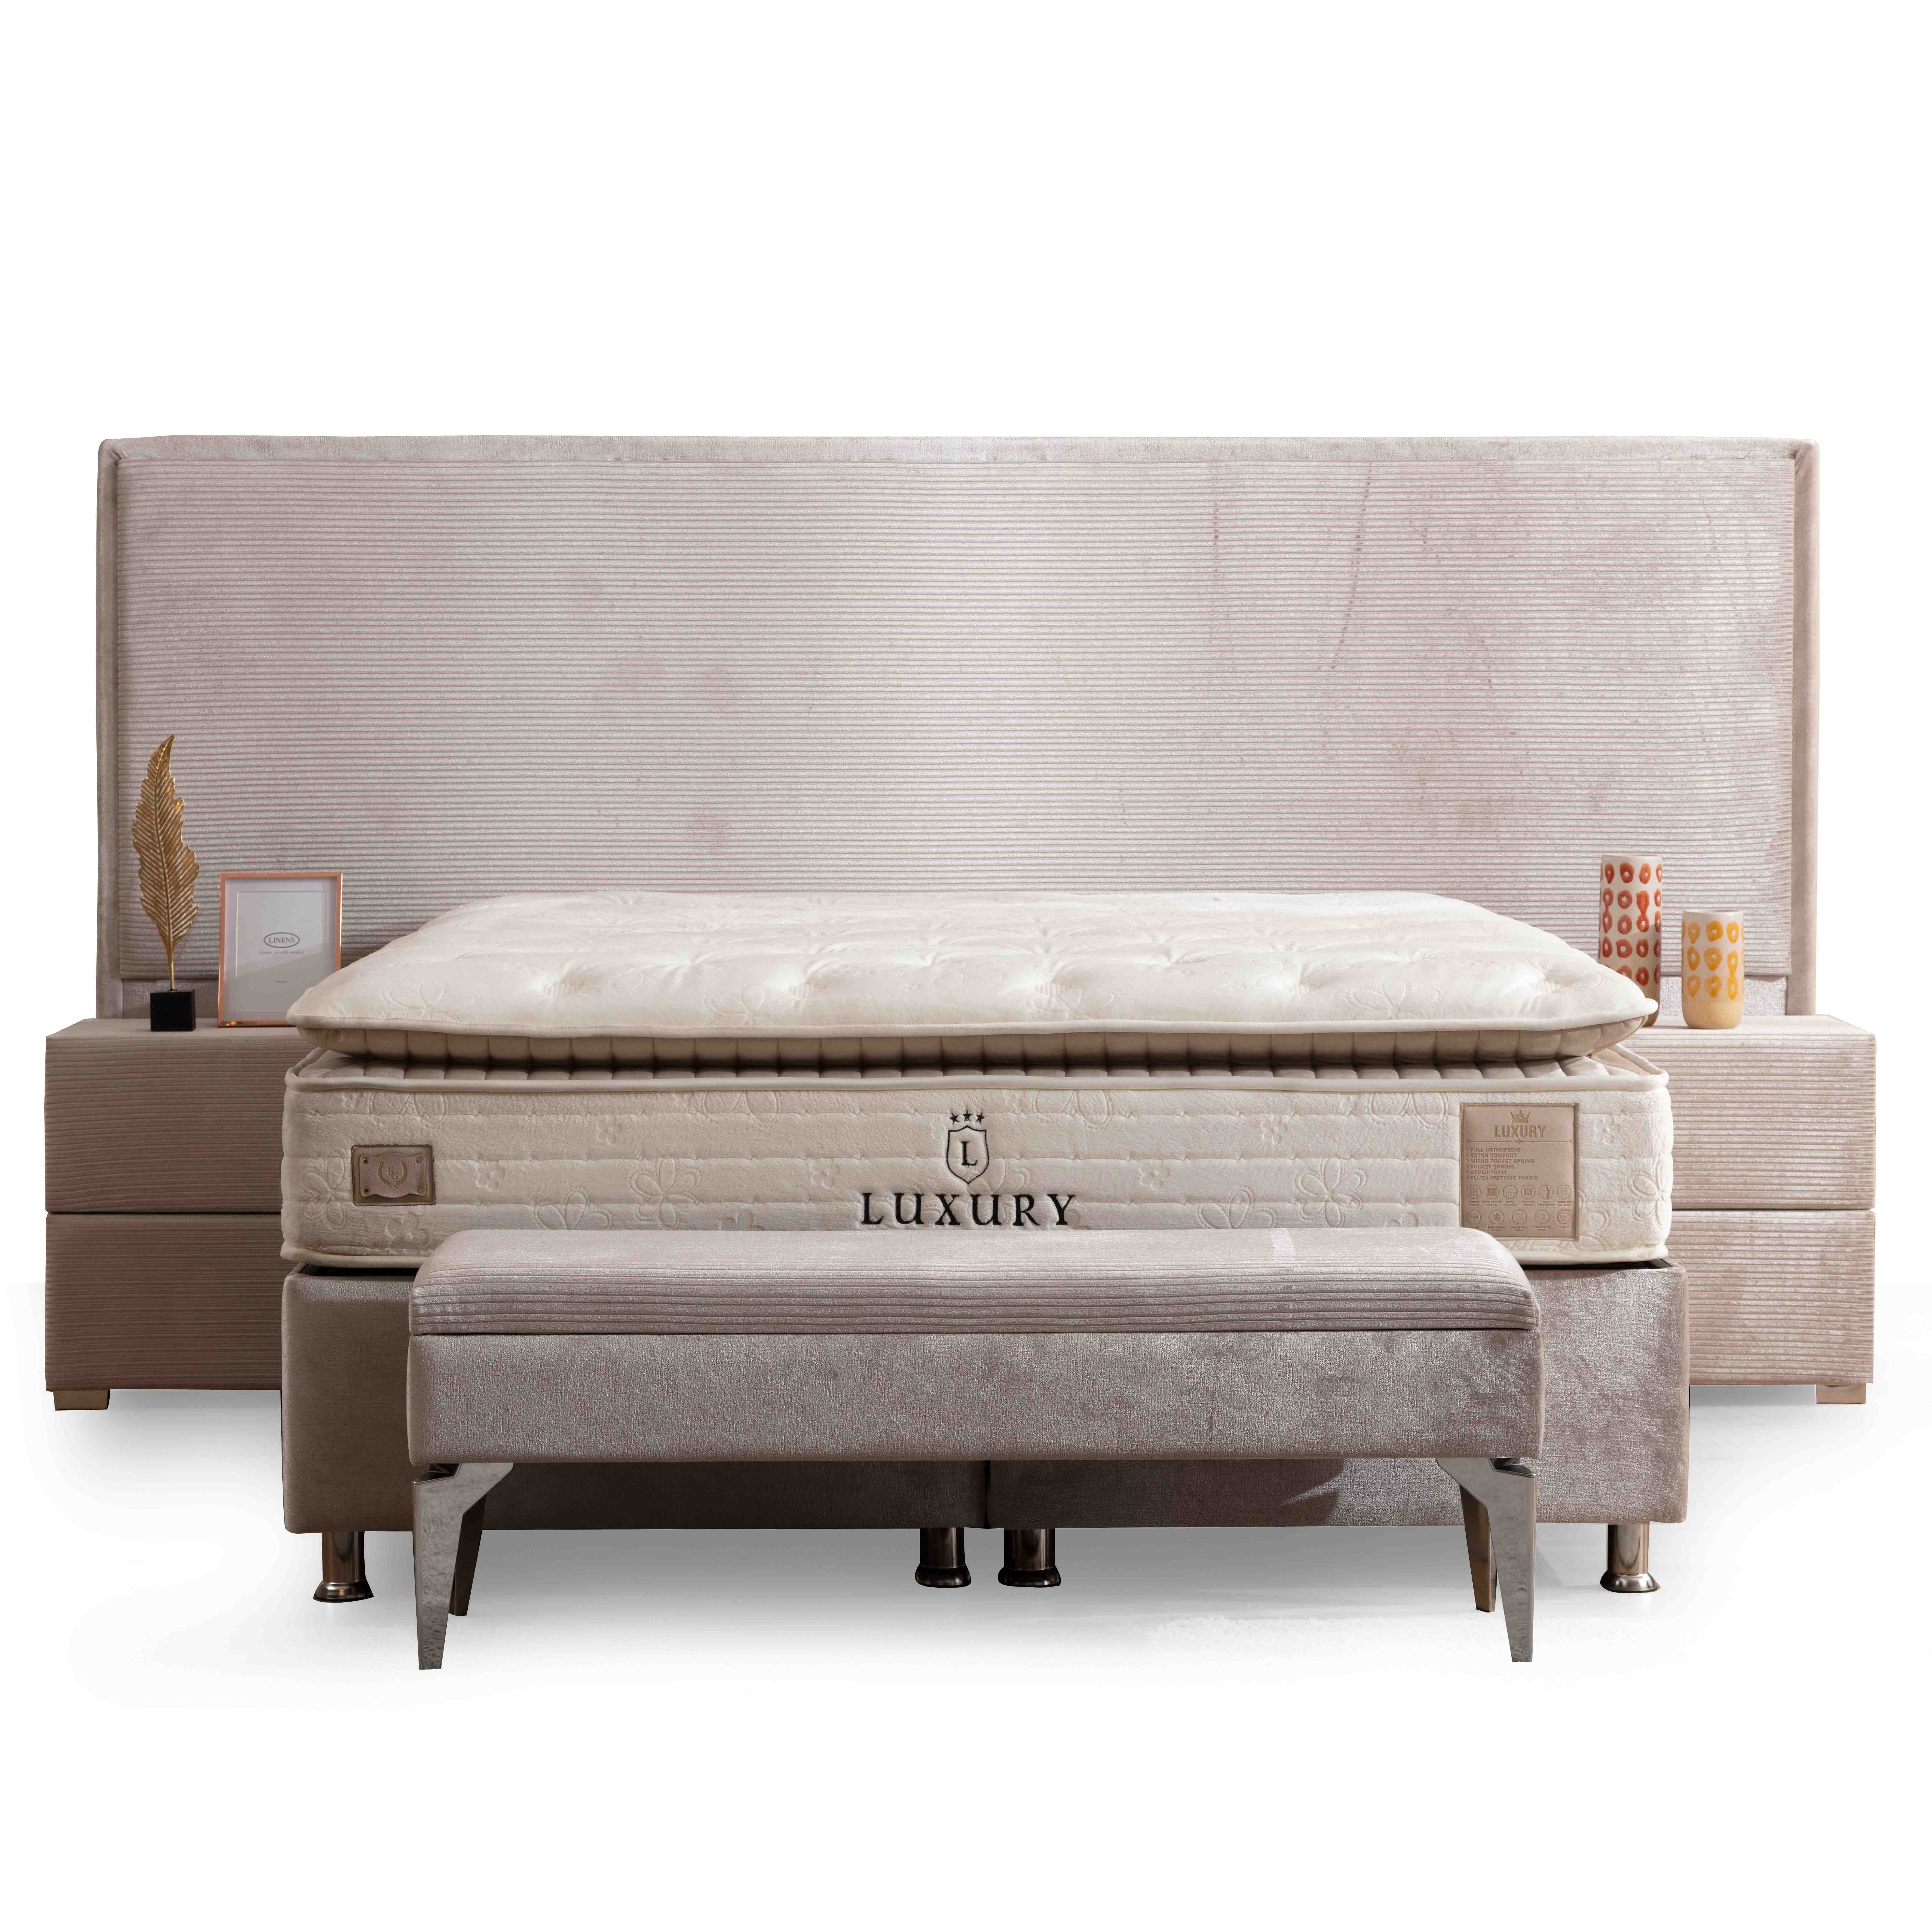 Havana Bed With Storage 160*200